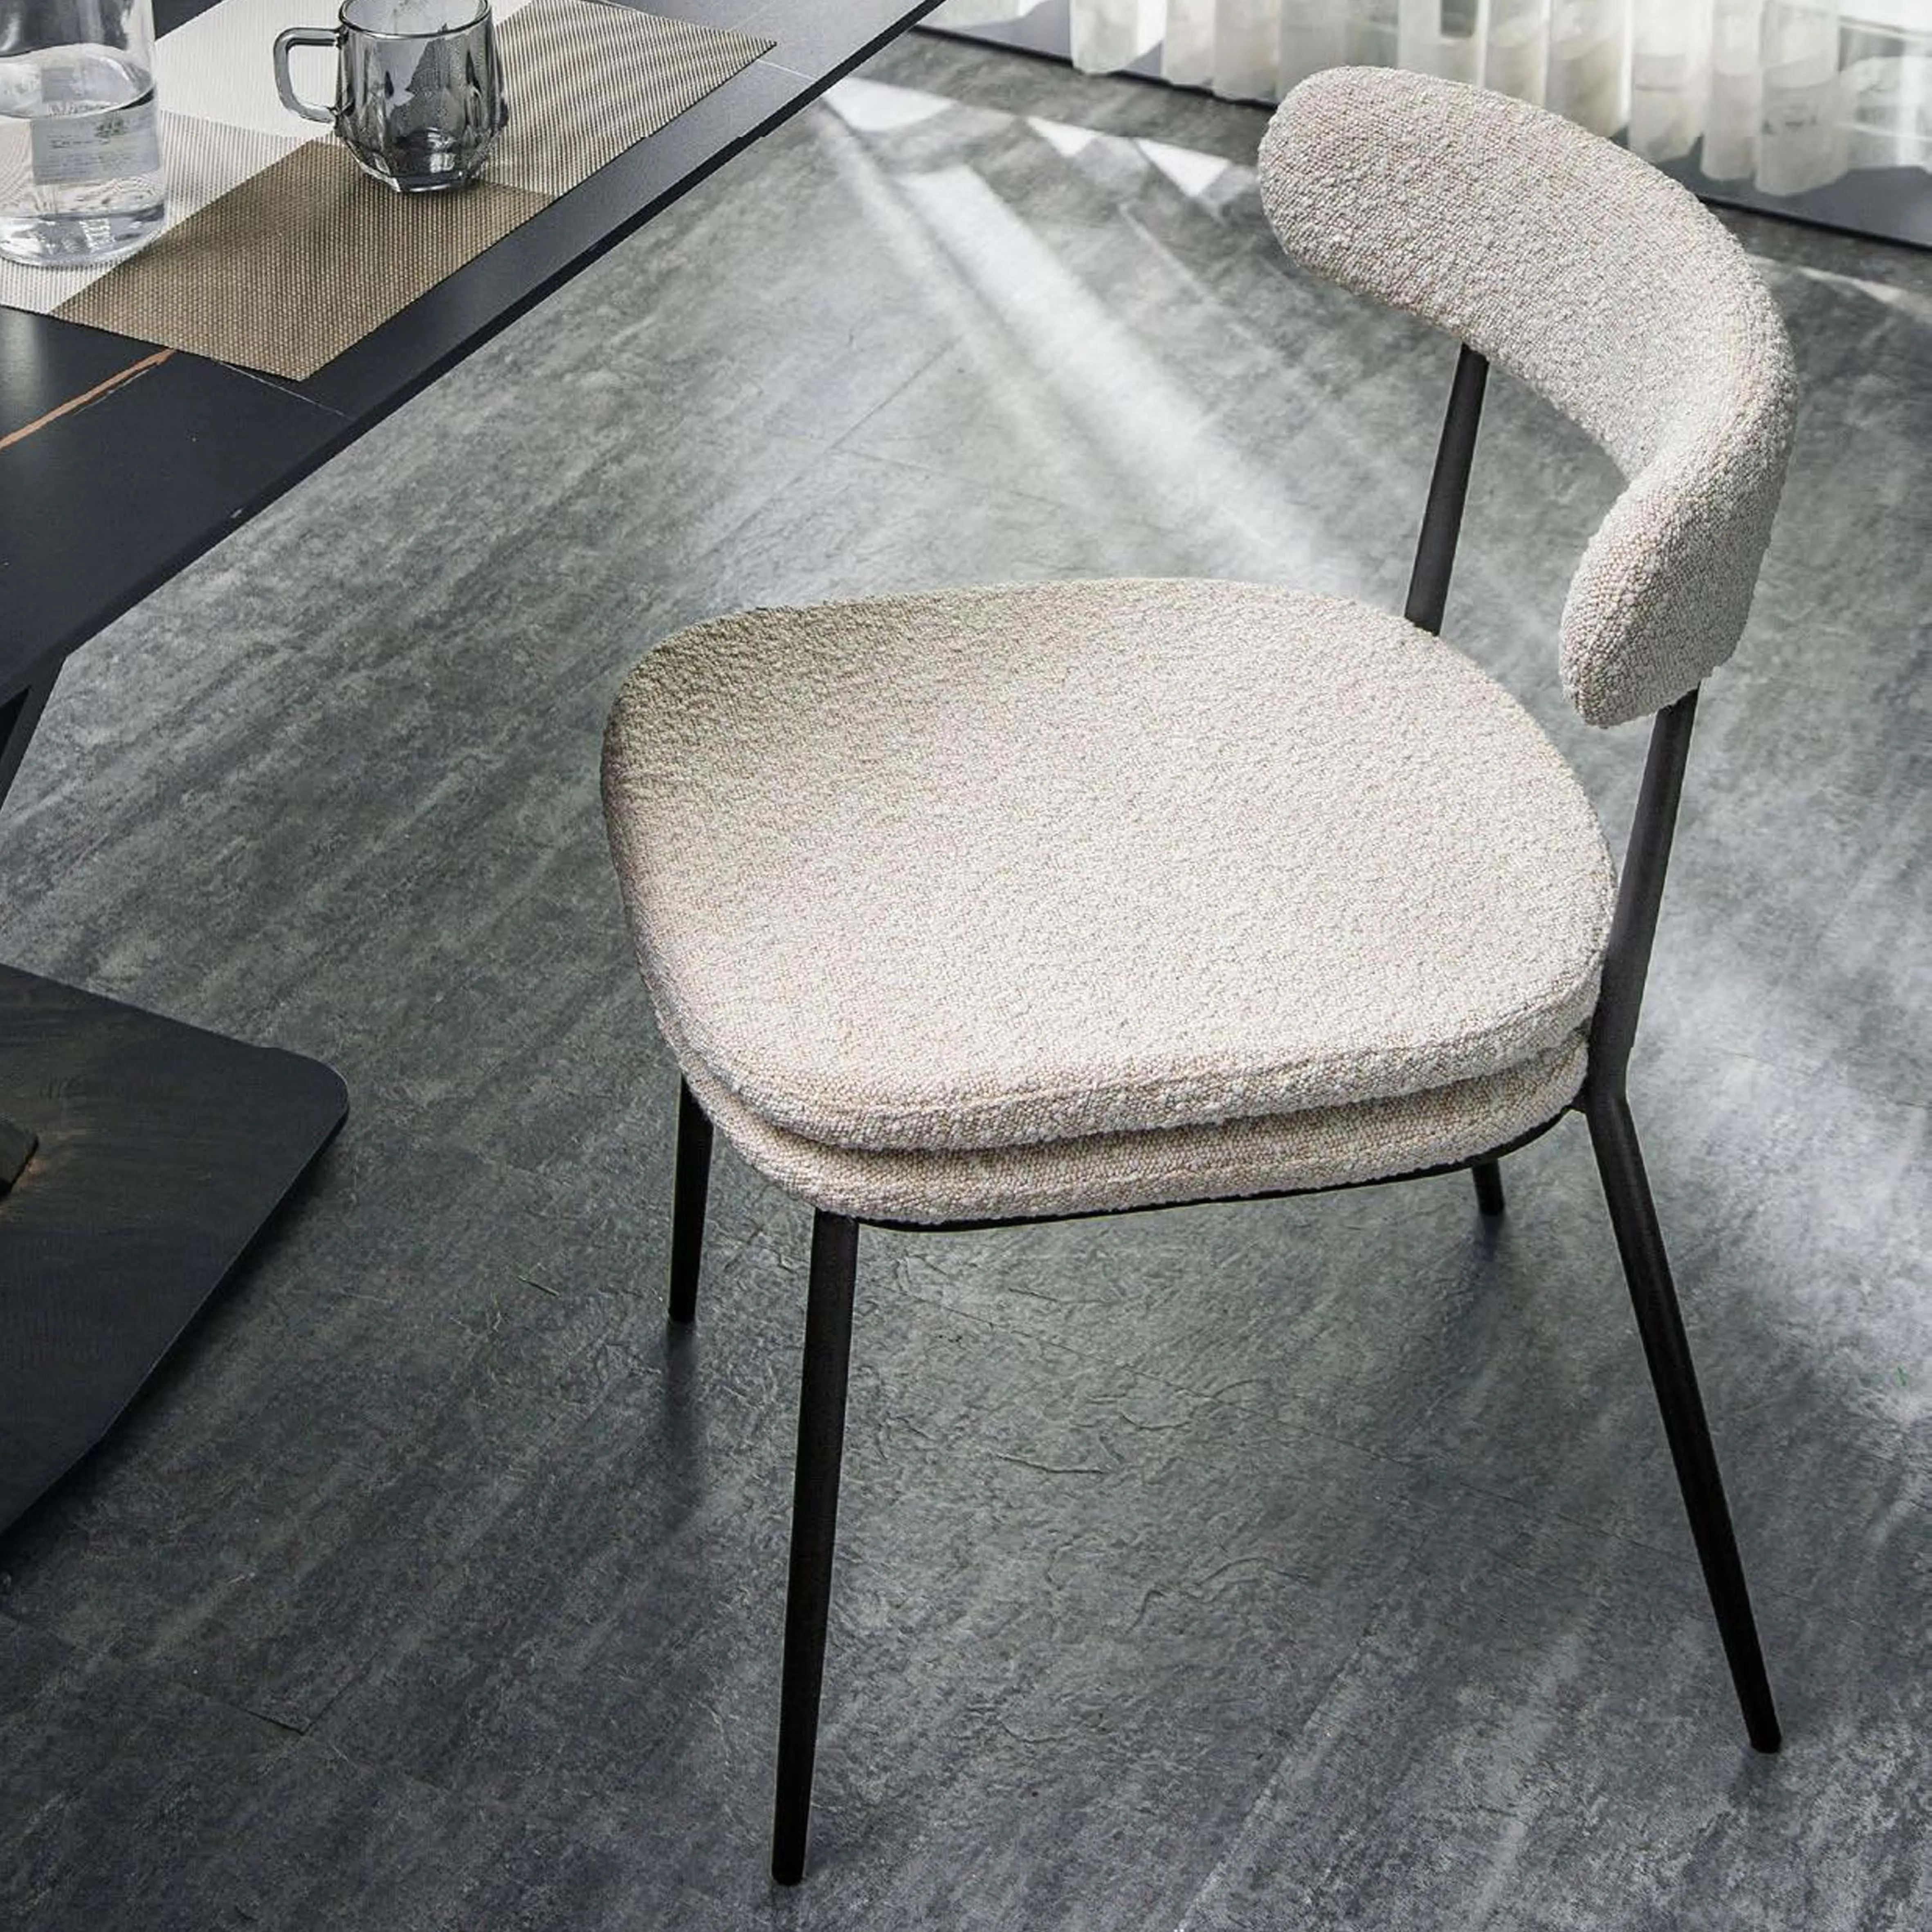 عالية الجودة و الإطار المعدني الكراسي جديد تصميم النسيج غرفة المعيشة أثاث كرسي سفرة لتناول الطعام